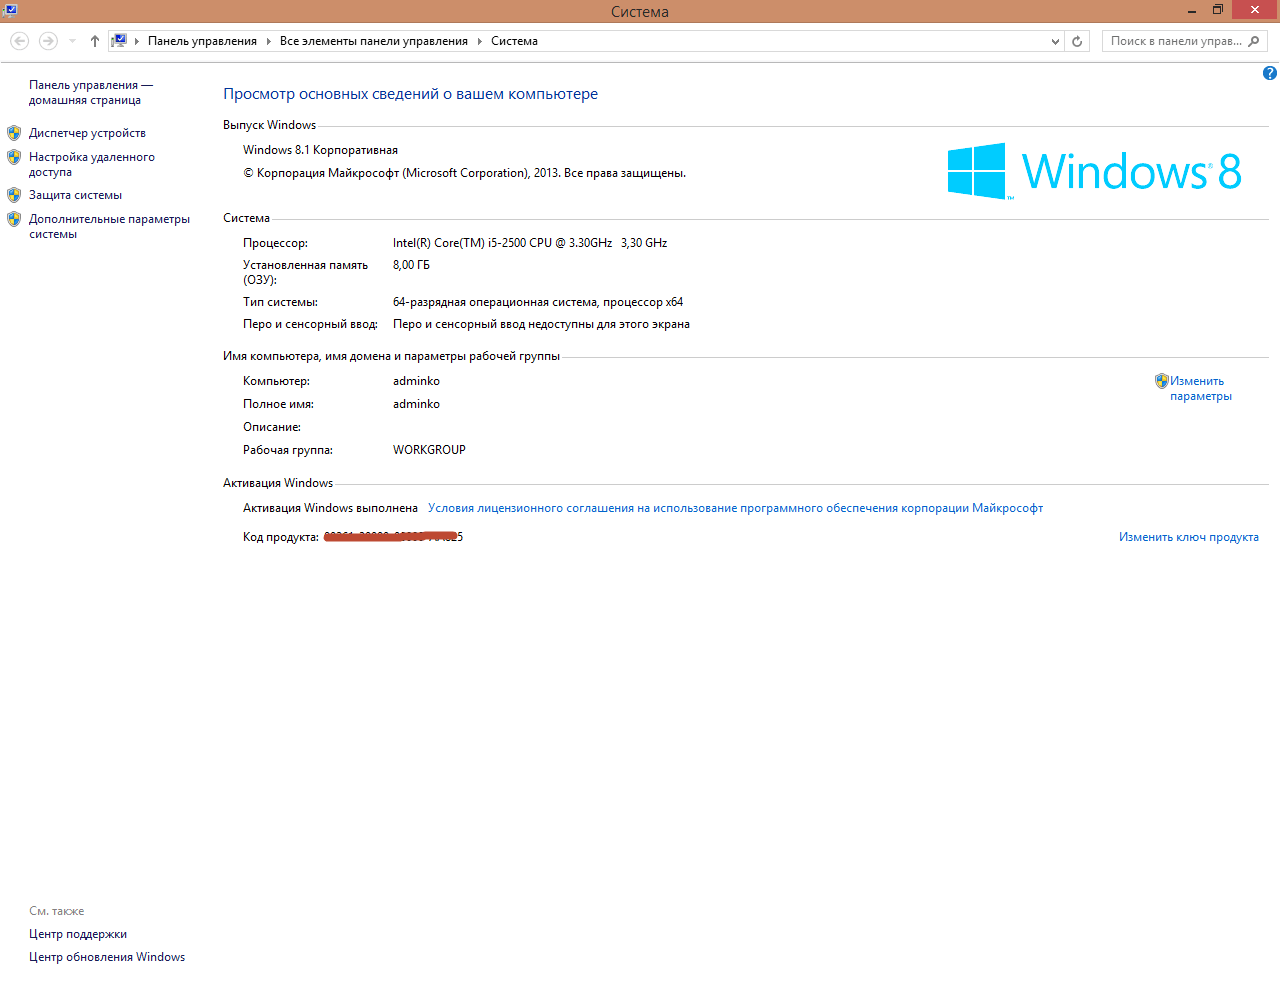 Как откатить систему назад windows 8 до точки восстановления на ноутбуке